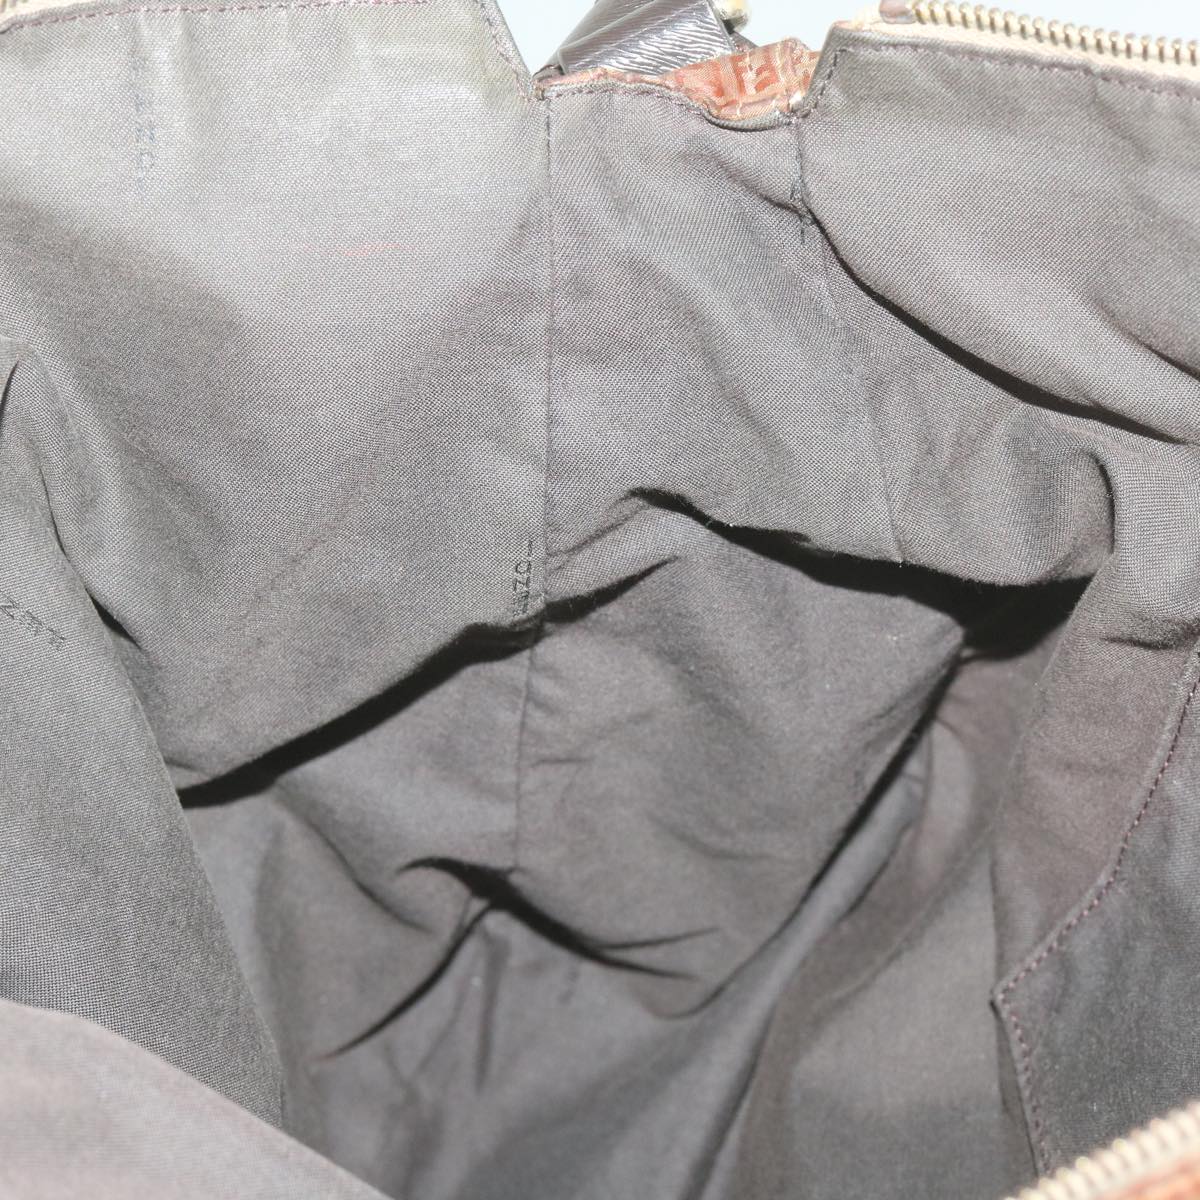 FENDI Zucchino Canvas Shoulder Bag Brown Auth 67343